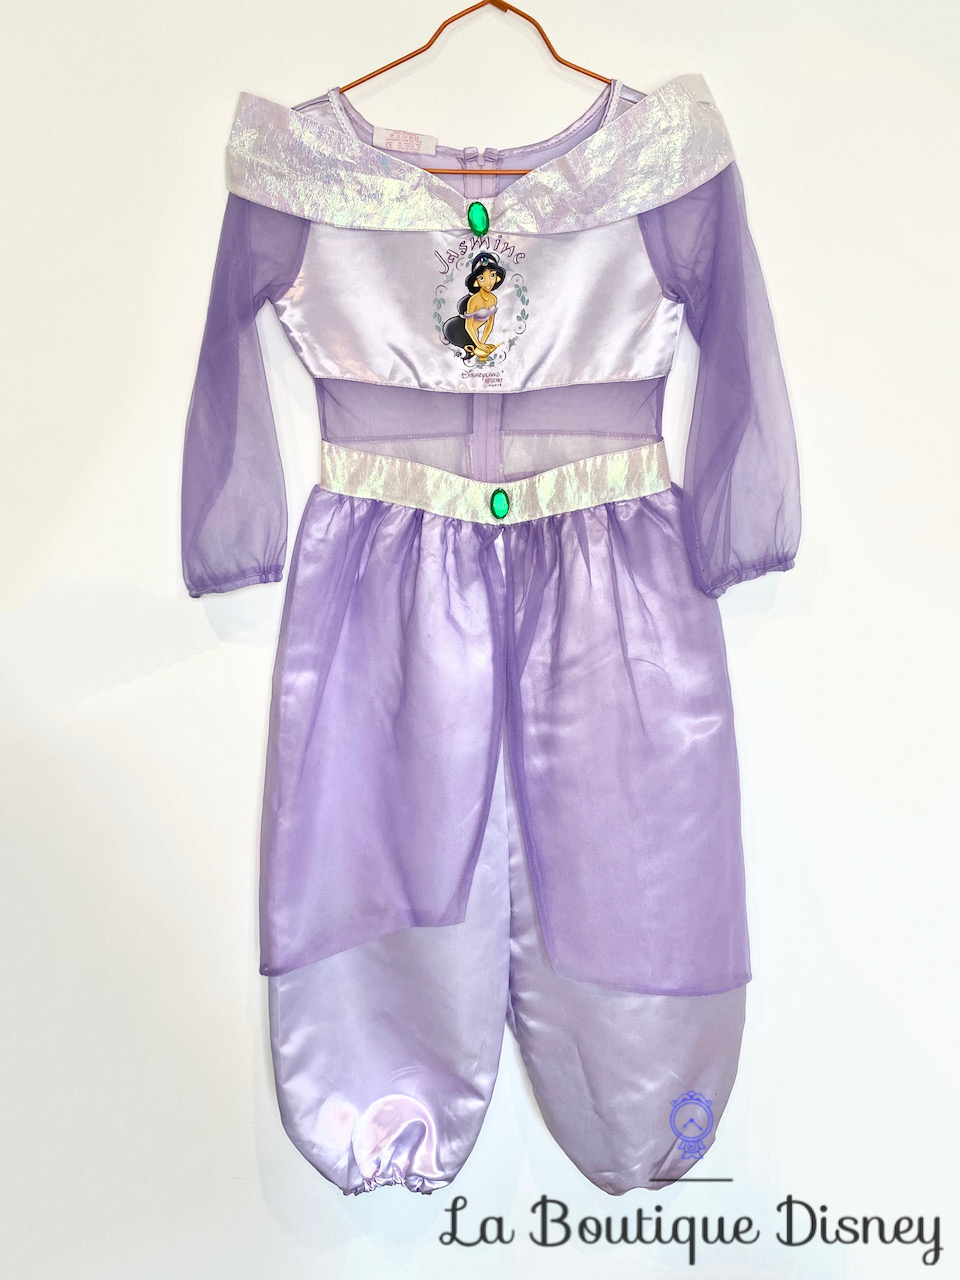 Déguisement Jasmine Disneyland Paris Disney taille 8 ans Aladdin combinaison princesse mauve violet